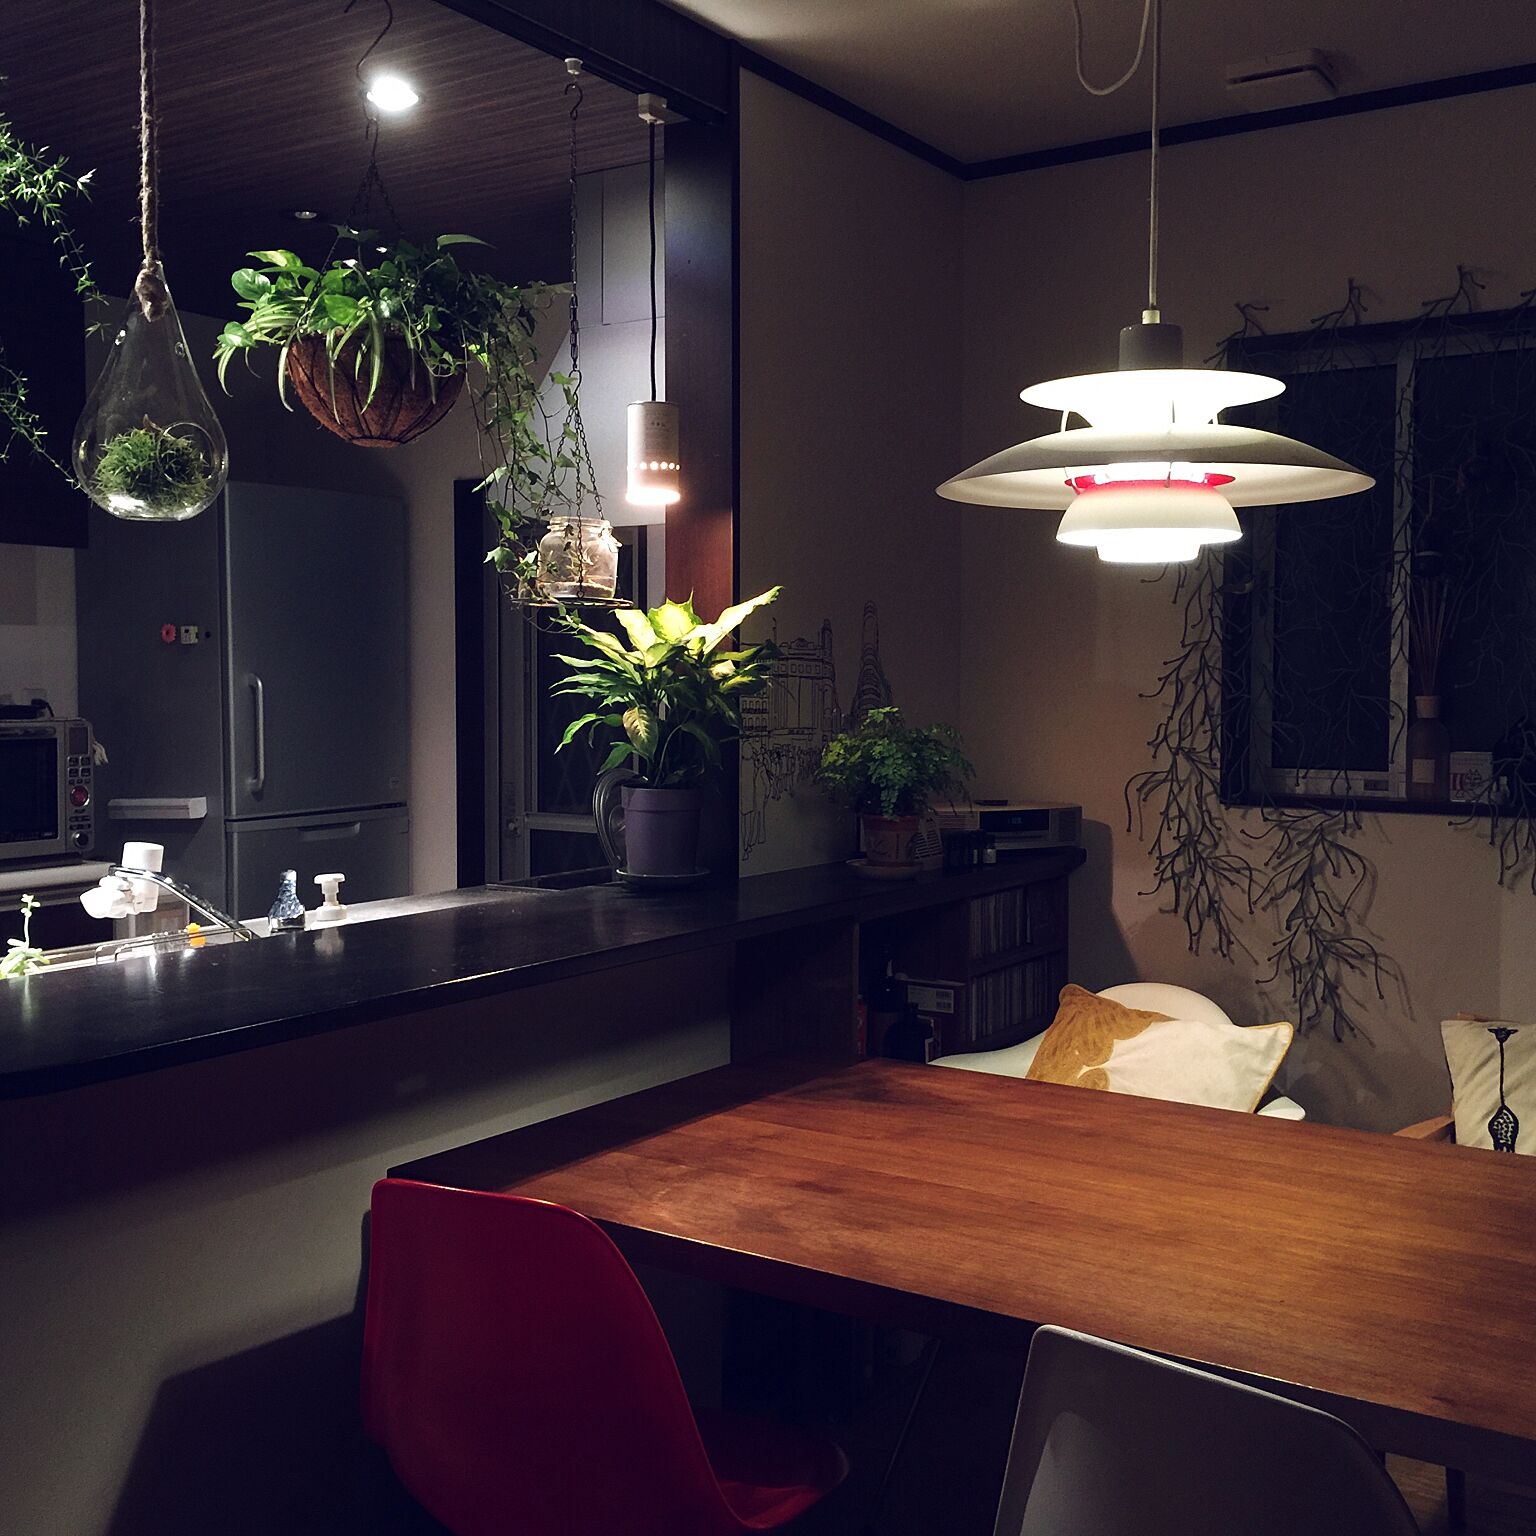 お部屋の雰囲気や目的で選ぼう！素敵な「照明」実例 | RoomClip mag 